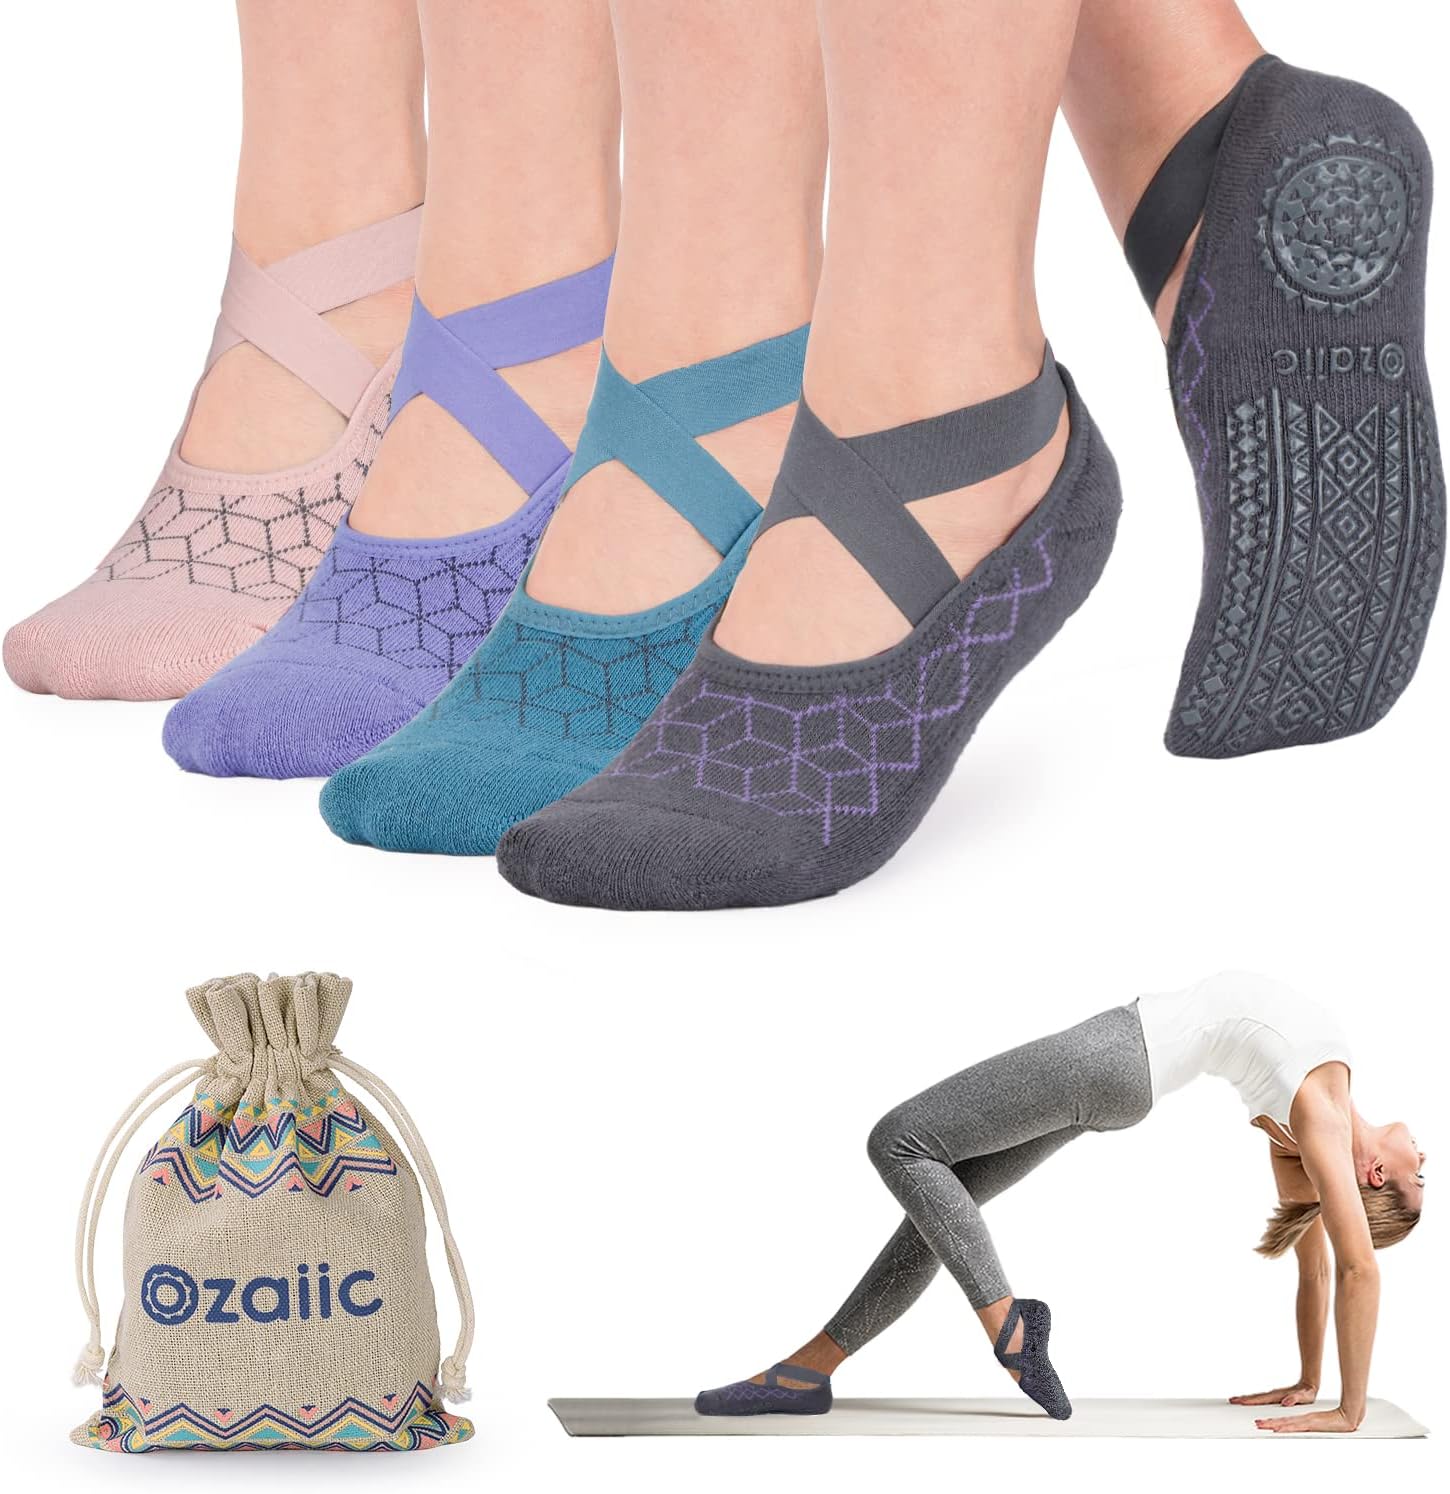  Ozaiic Yoga Socks For Women Non-Slip Grips & Straps